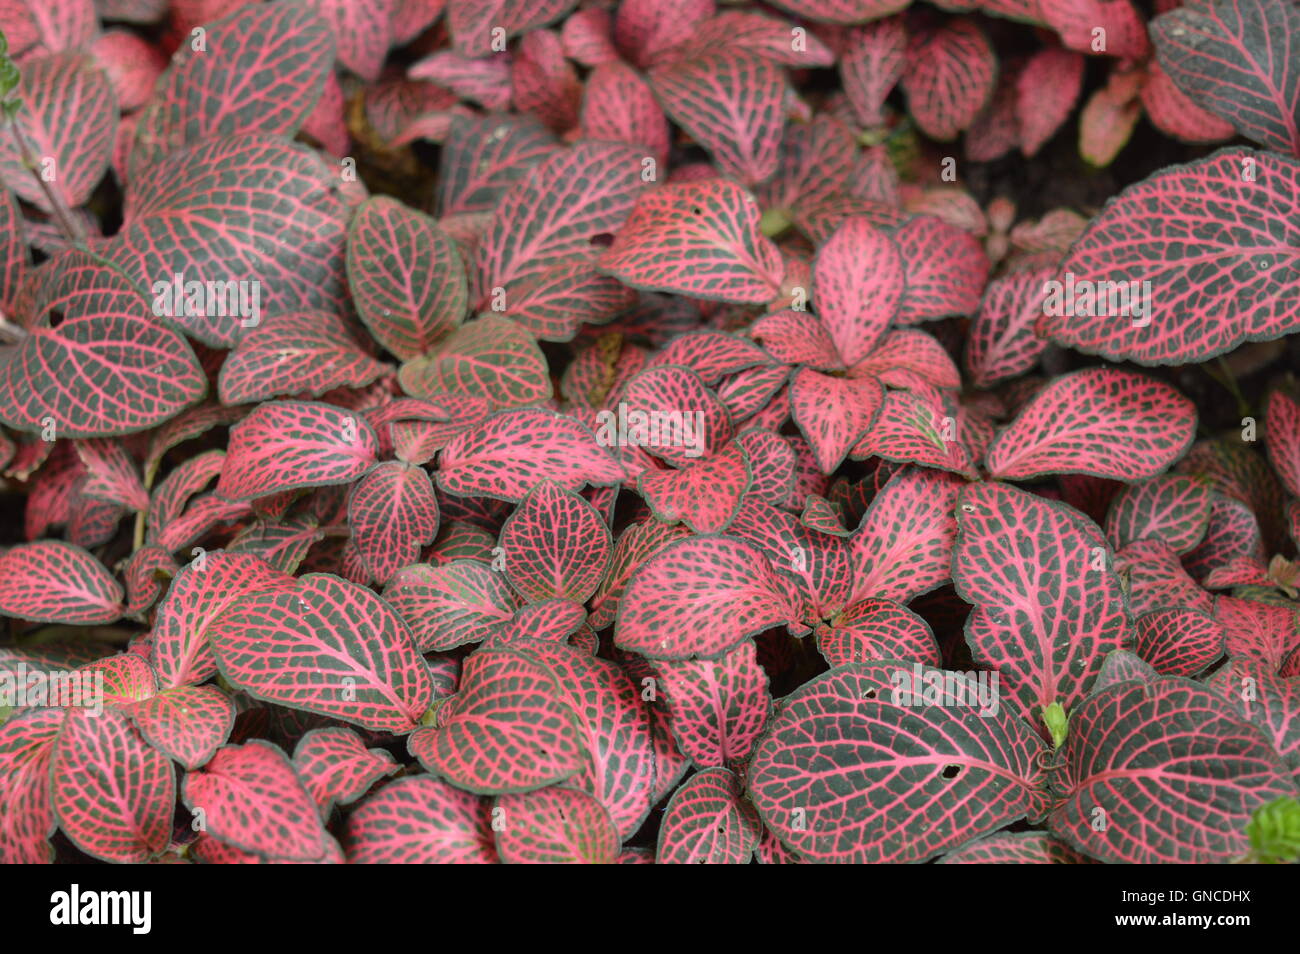 Pflanzen mit roten und schwarzen Blättern Stockfotografie - Alamy